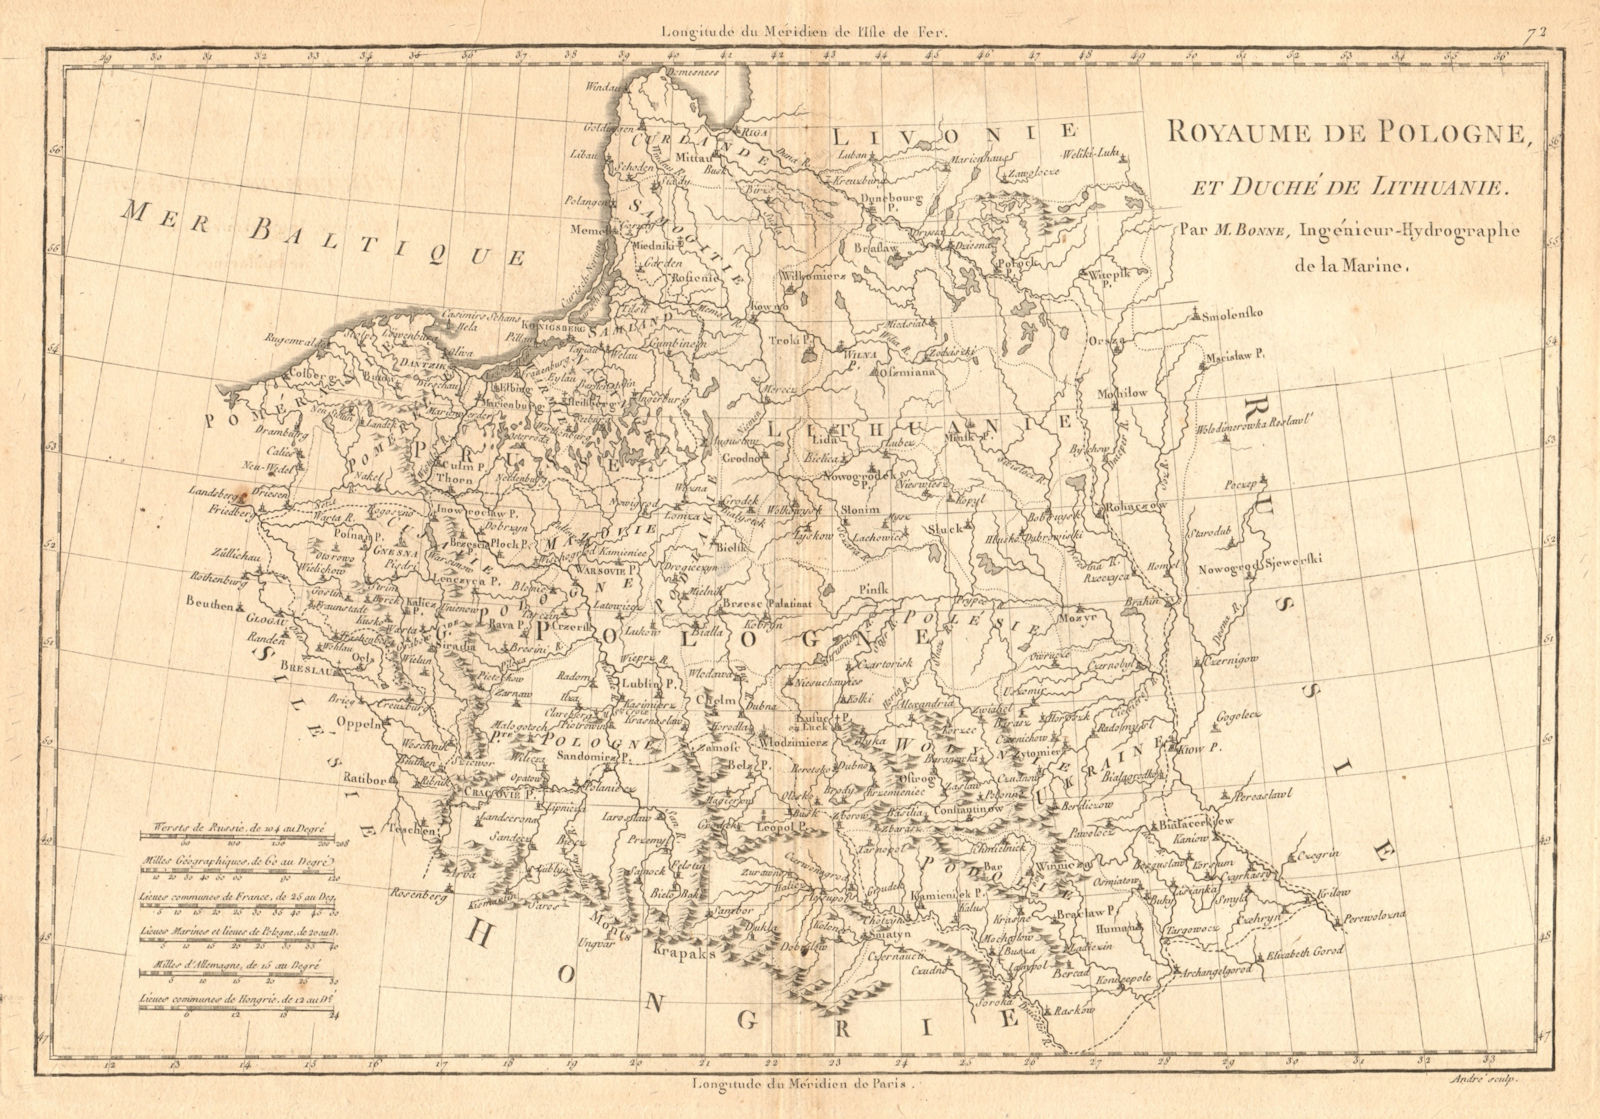 Royaume de Pologne et Duché de Lithuanie. Poland & Lithuania. BONNE 1787 map